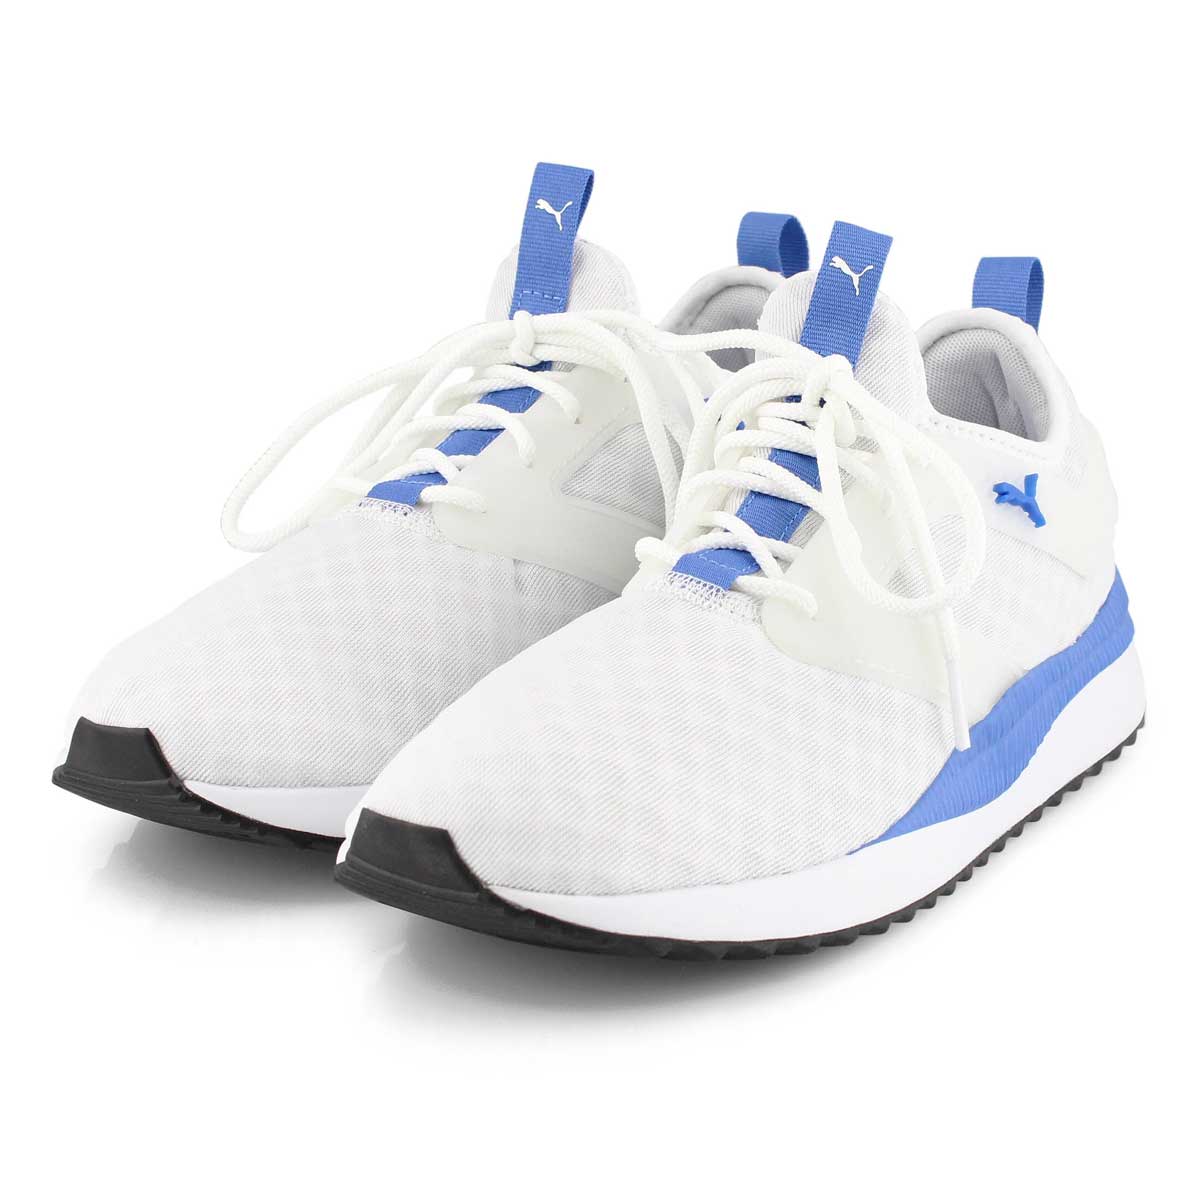 Puma Men's Pacer Next Excel Sneaker - White/ | SoftMoc.com